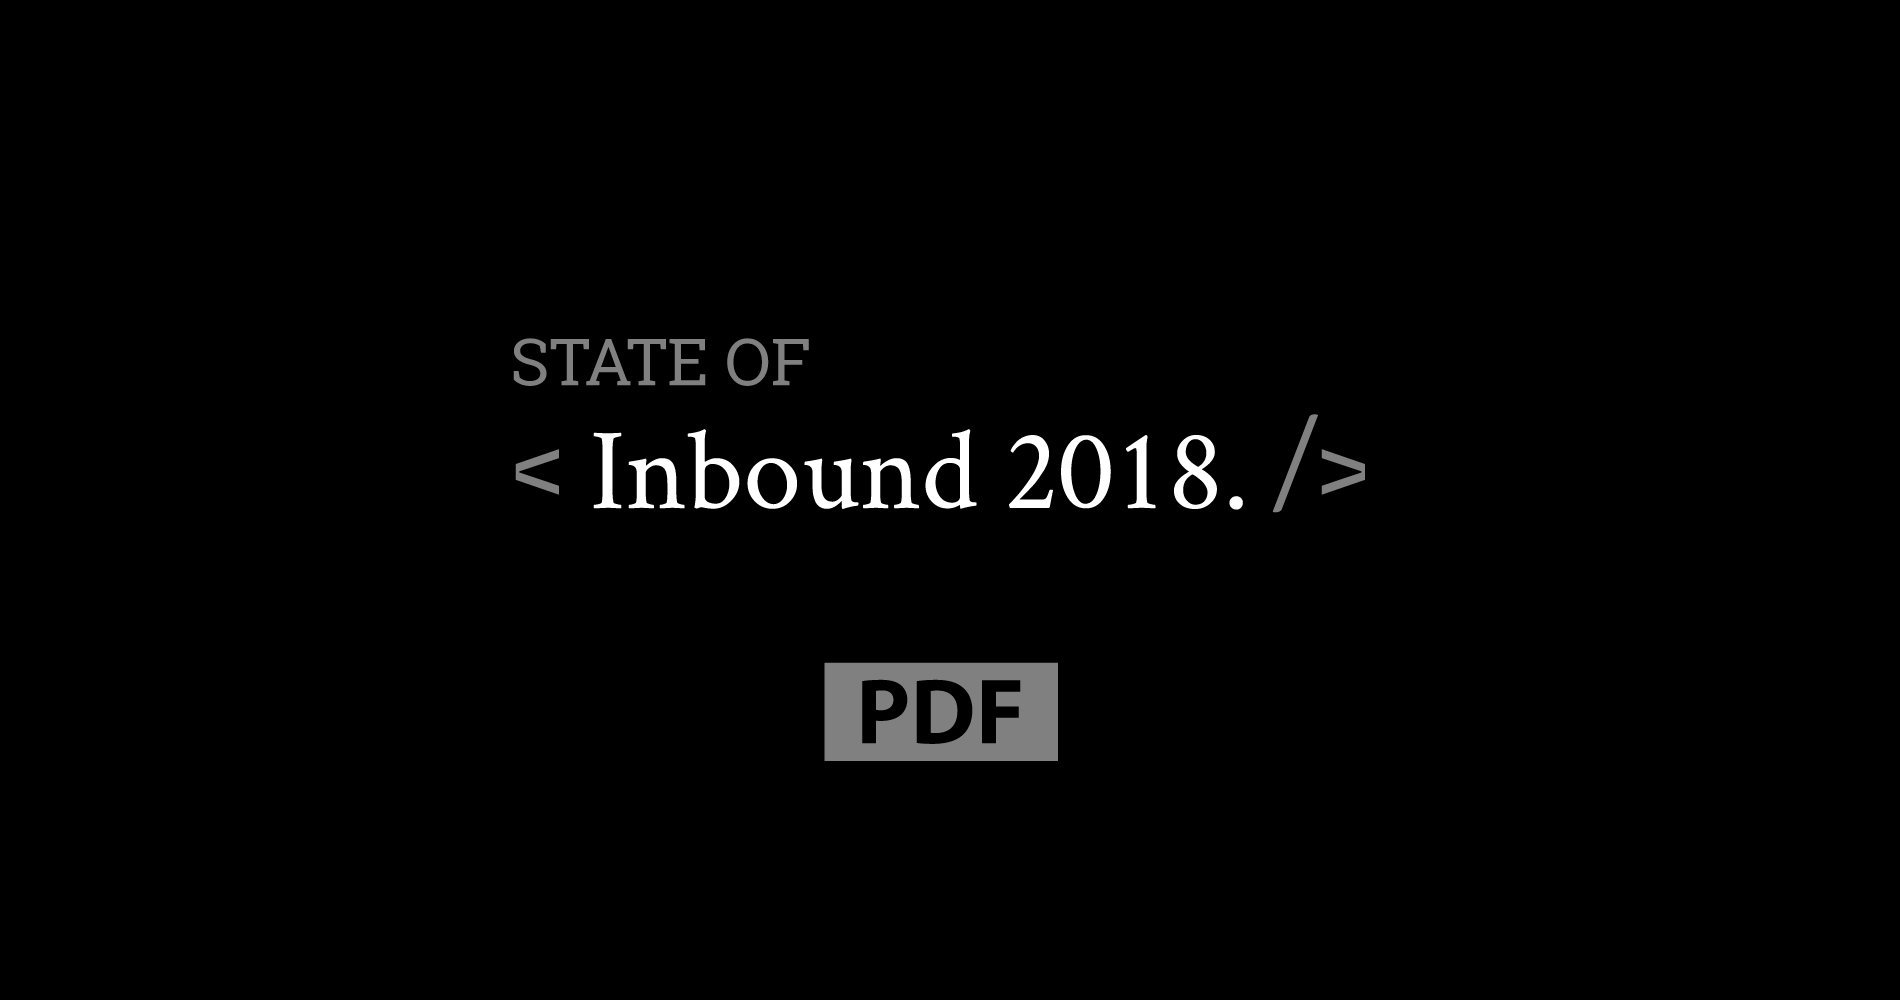 State of Inbound 2018